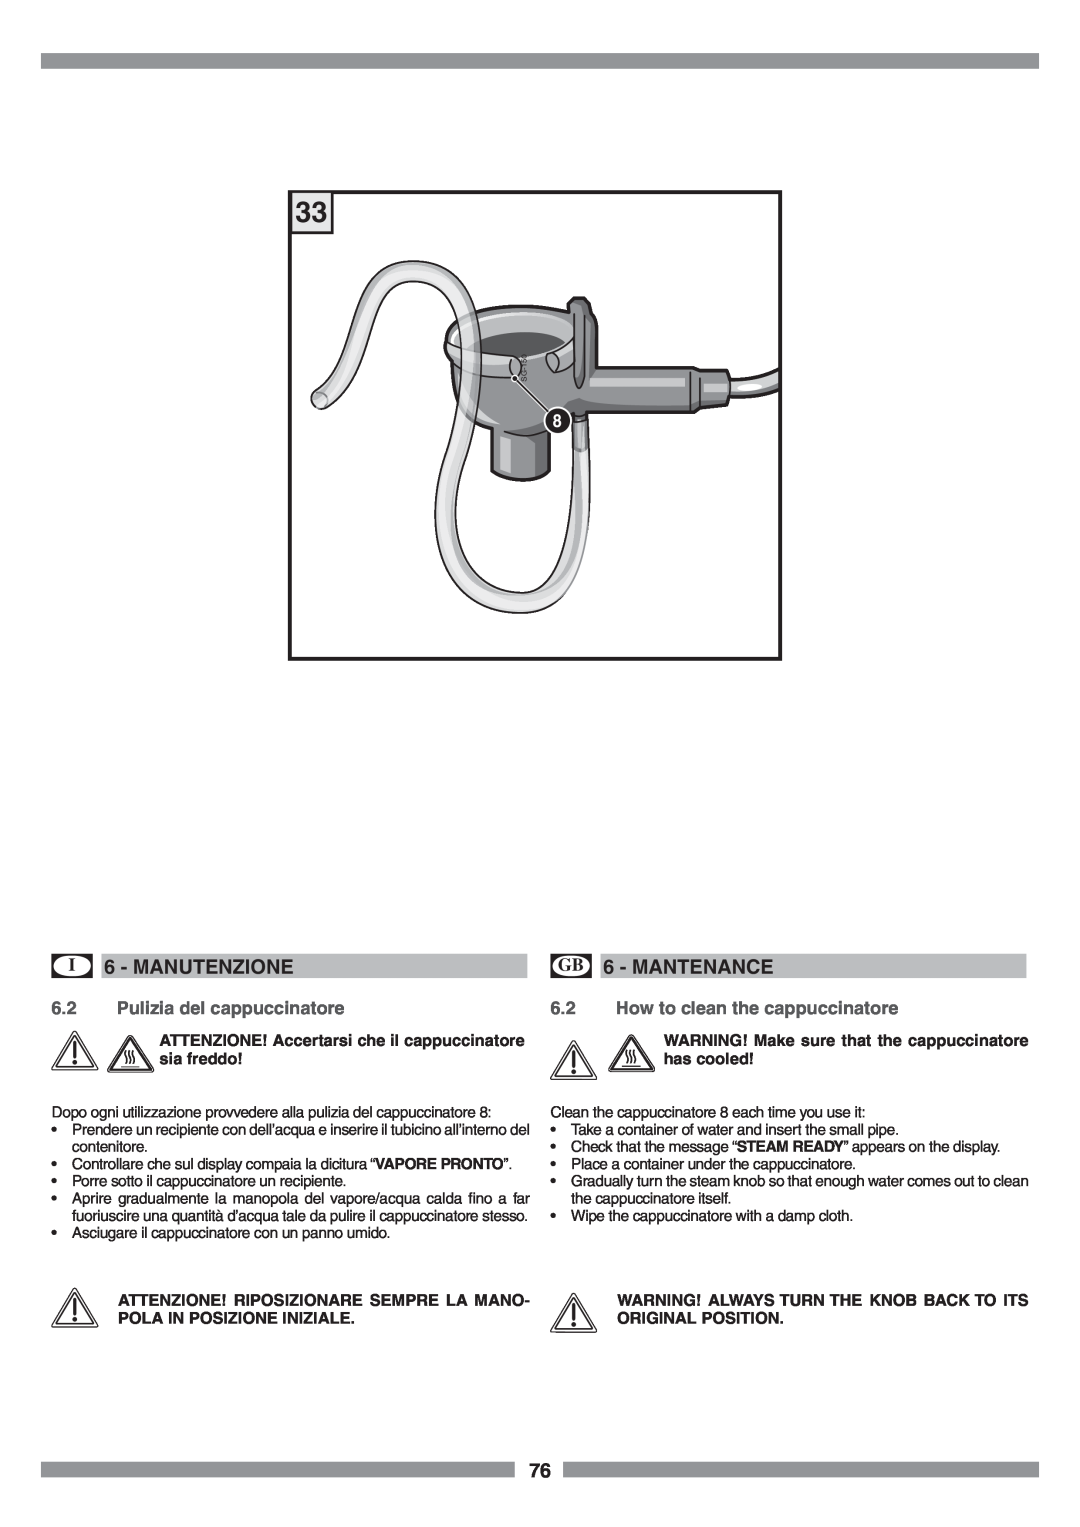 Smeg SCM1 manual Pulizia del cappuccinatore, How to clean the cappuccinatore, I 6 - MANUTENZIONE, GB 6 - MANTENANCE 